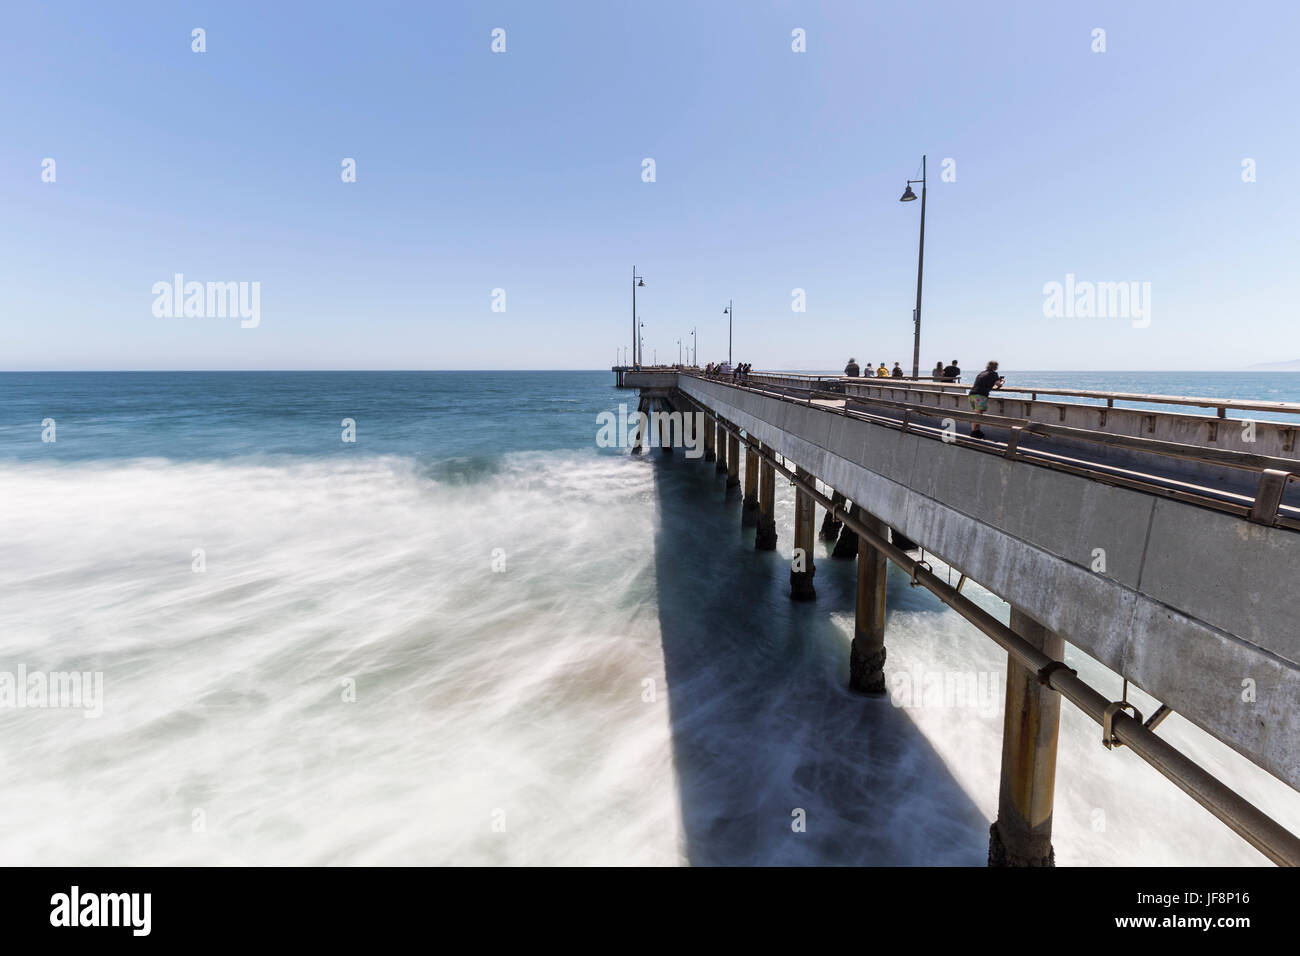 Los Angeles, California, Stati Uniti d'America - 26 Giugno 2017: la spiaggia di Venezia la pesca del molo con motion blur onde. Foto Stock